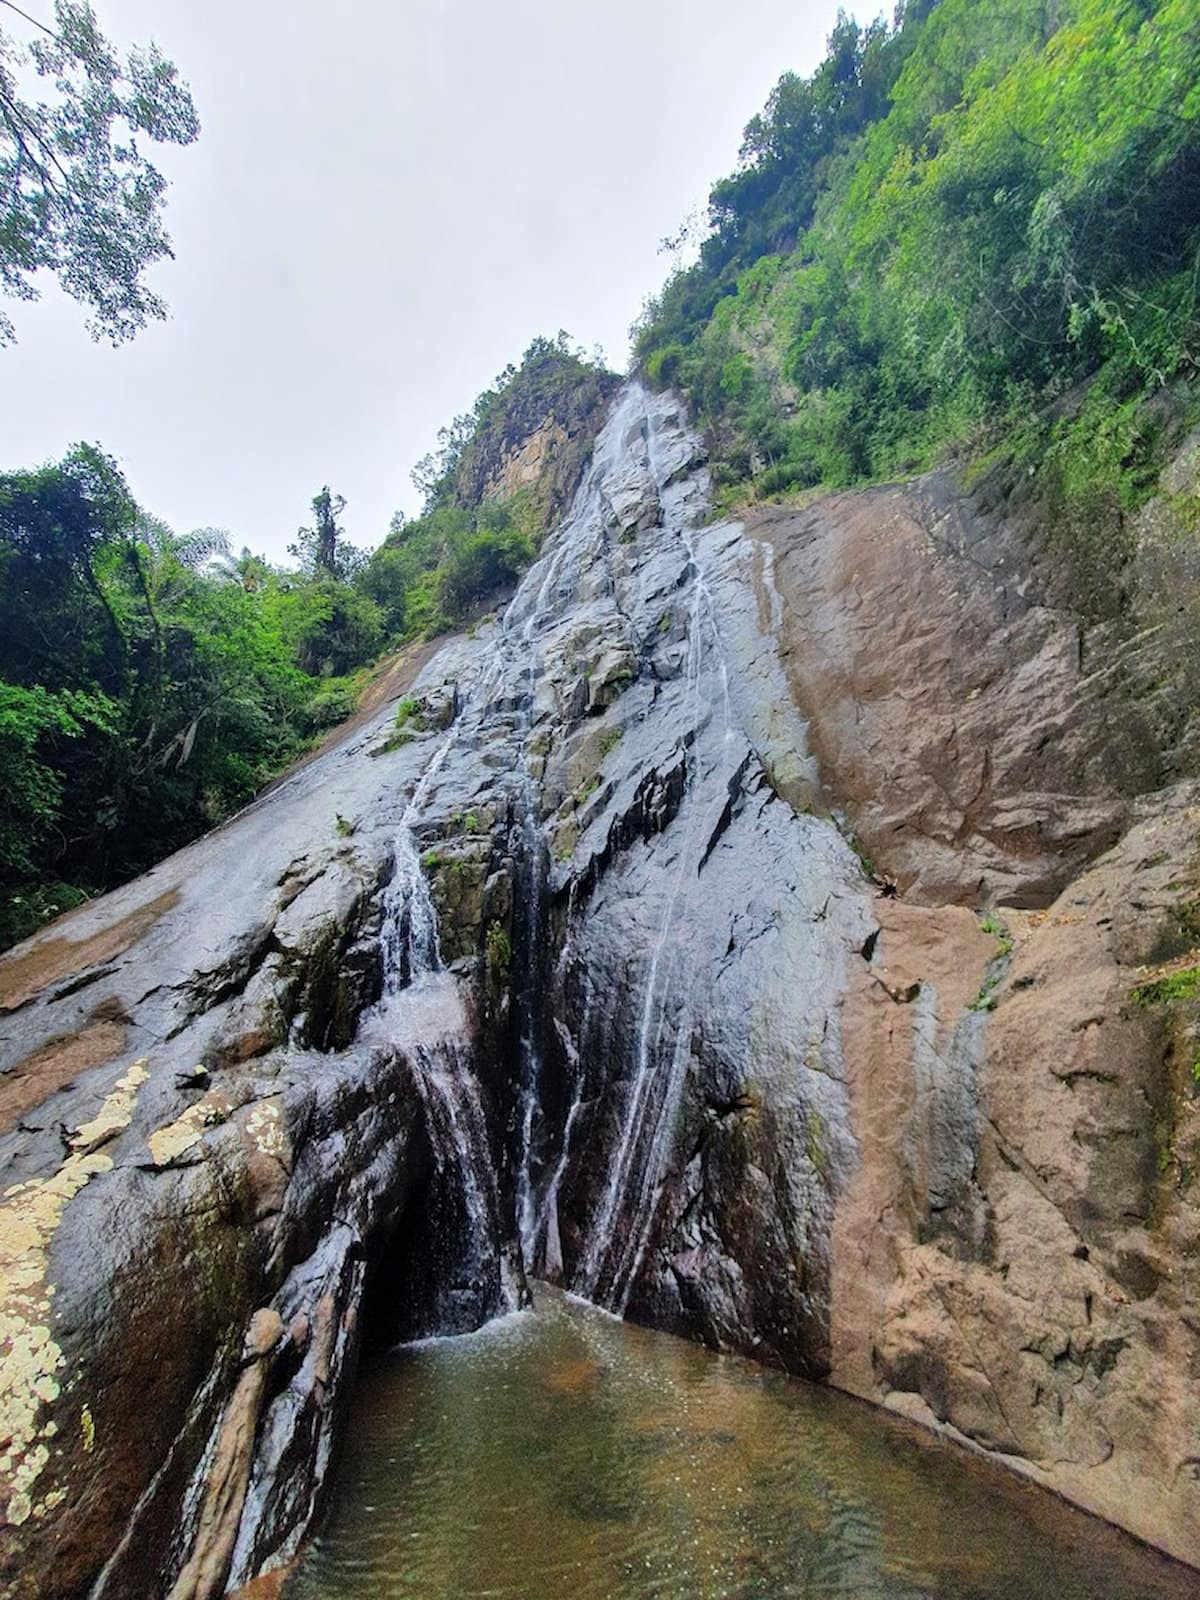 Cachoeira do Funil